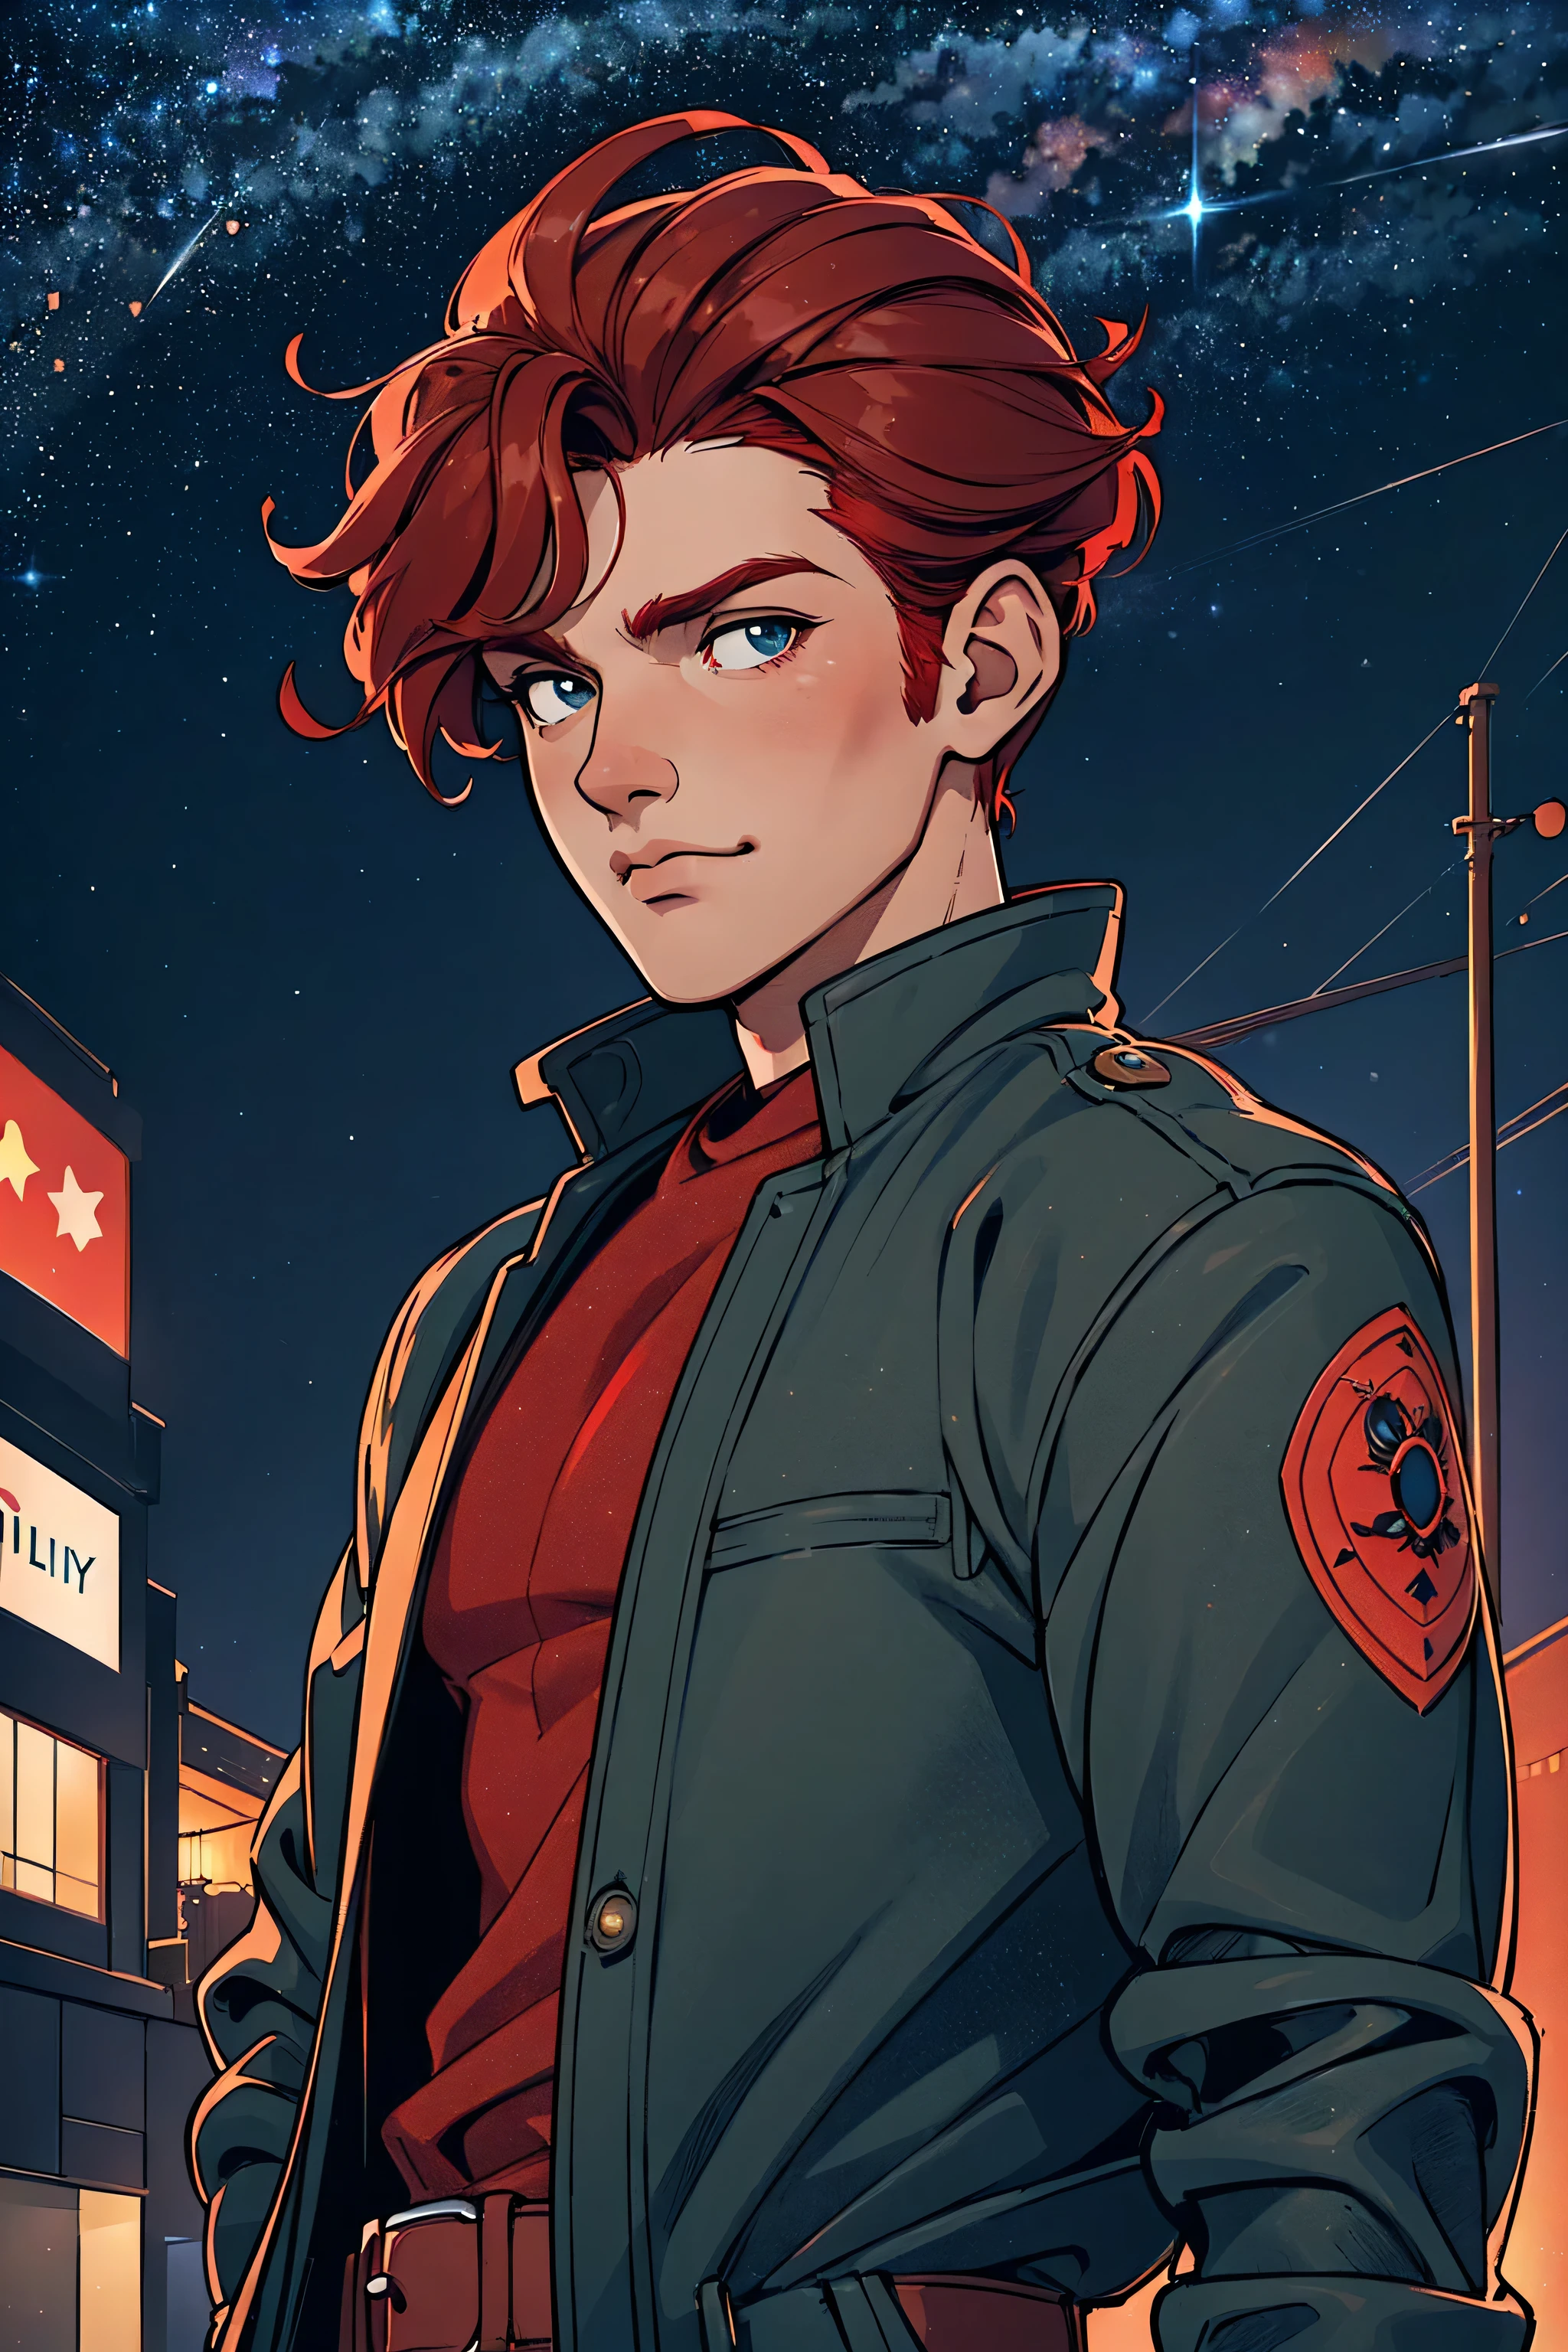 一个男人, 英俊的, 强壮的, 红发, 穿着夹克, 夜间放置在城市道路上, 柔和的城市照明, 背景中的星空, 卡通艺术风格, 以自然的姿势, 最好的质量, 洛拉耶斯